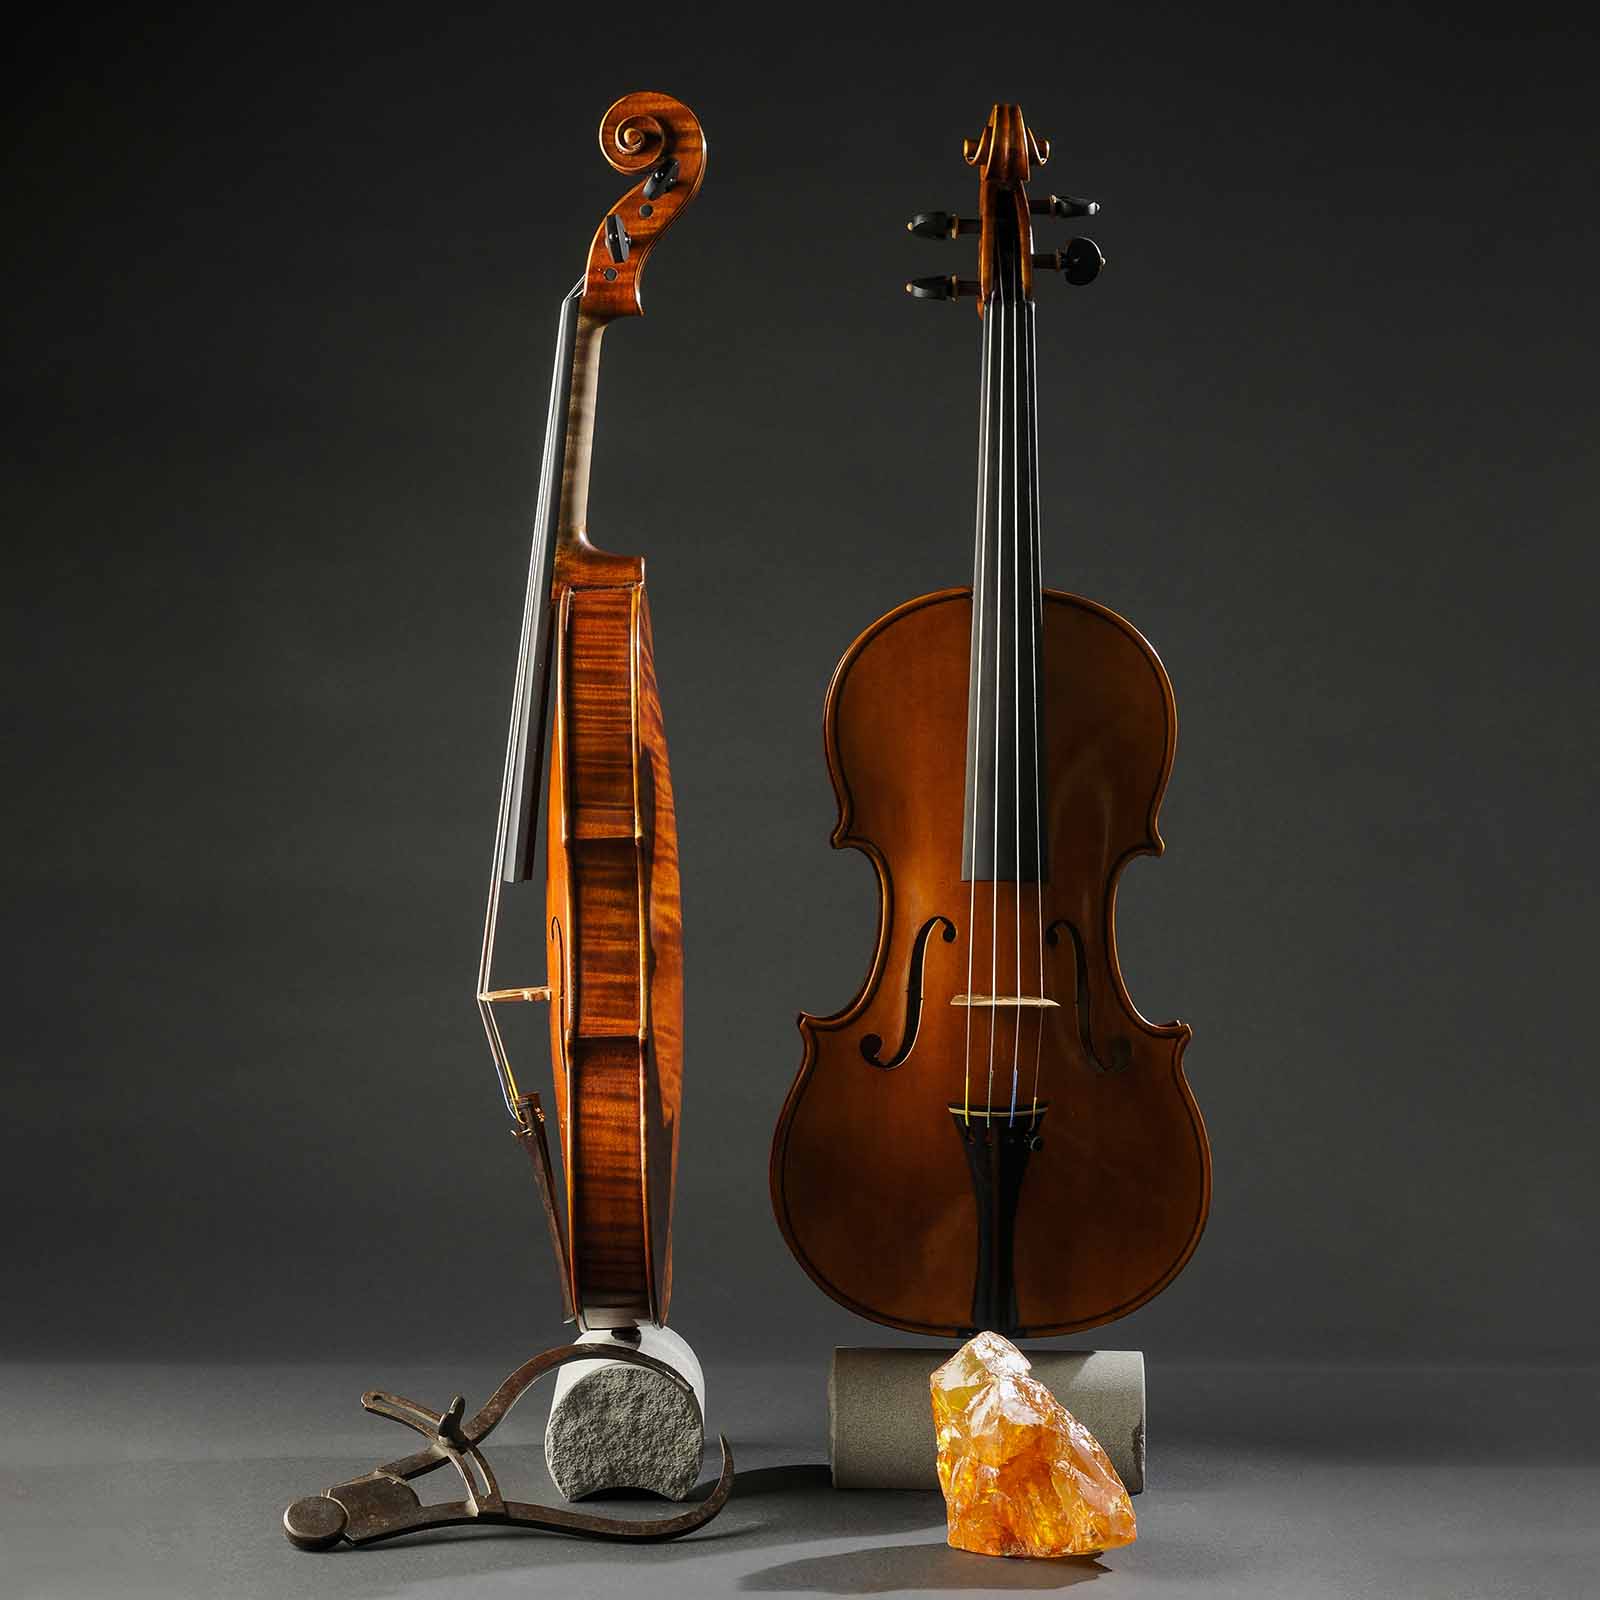 Stradivari & Del Gesù Stradivari & Mod. Del Gesù “The Twins“ - Image 9